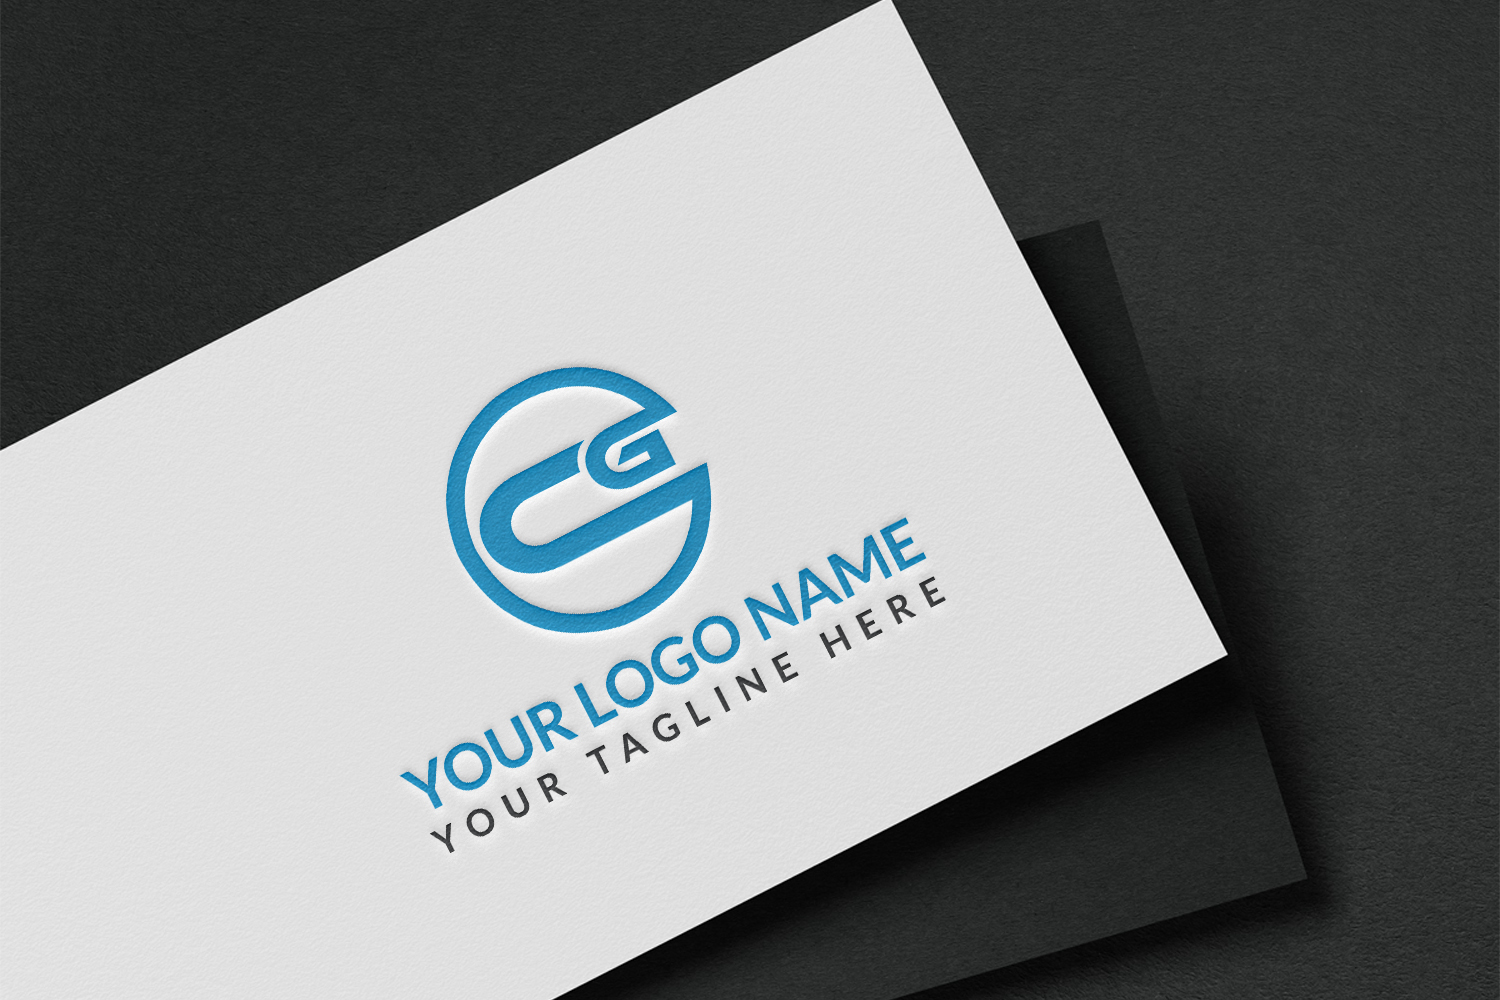 CG Letter Logo Design Template